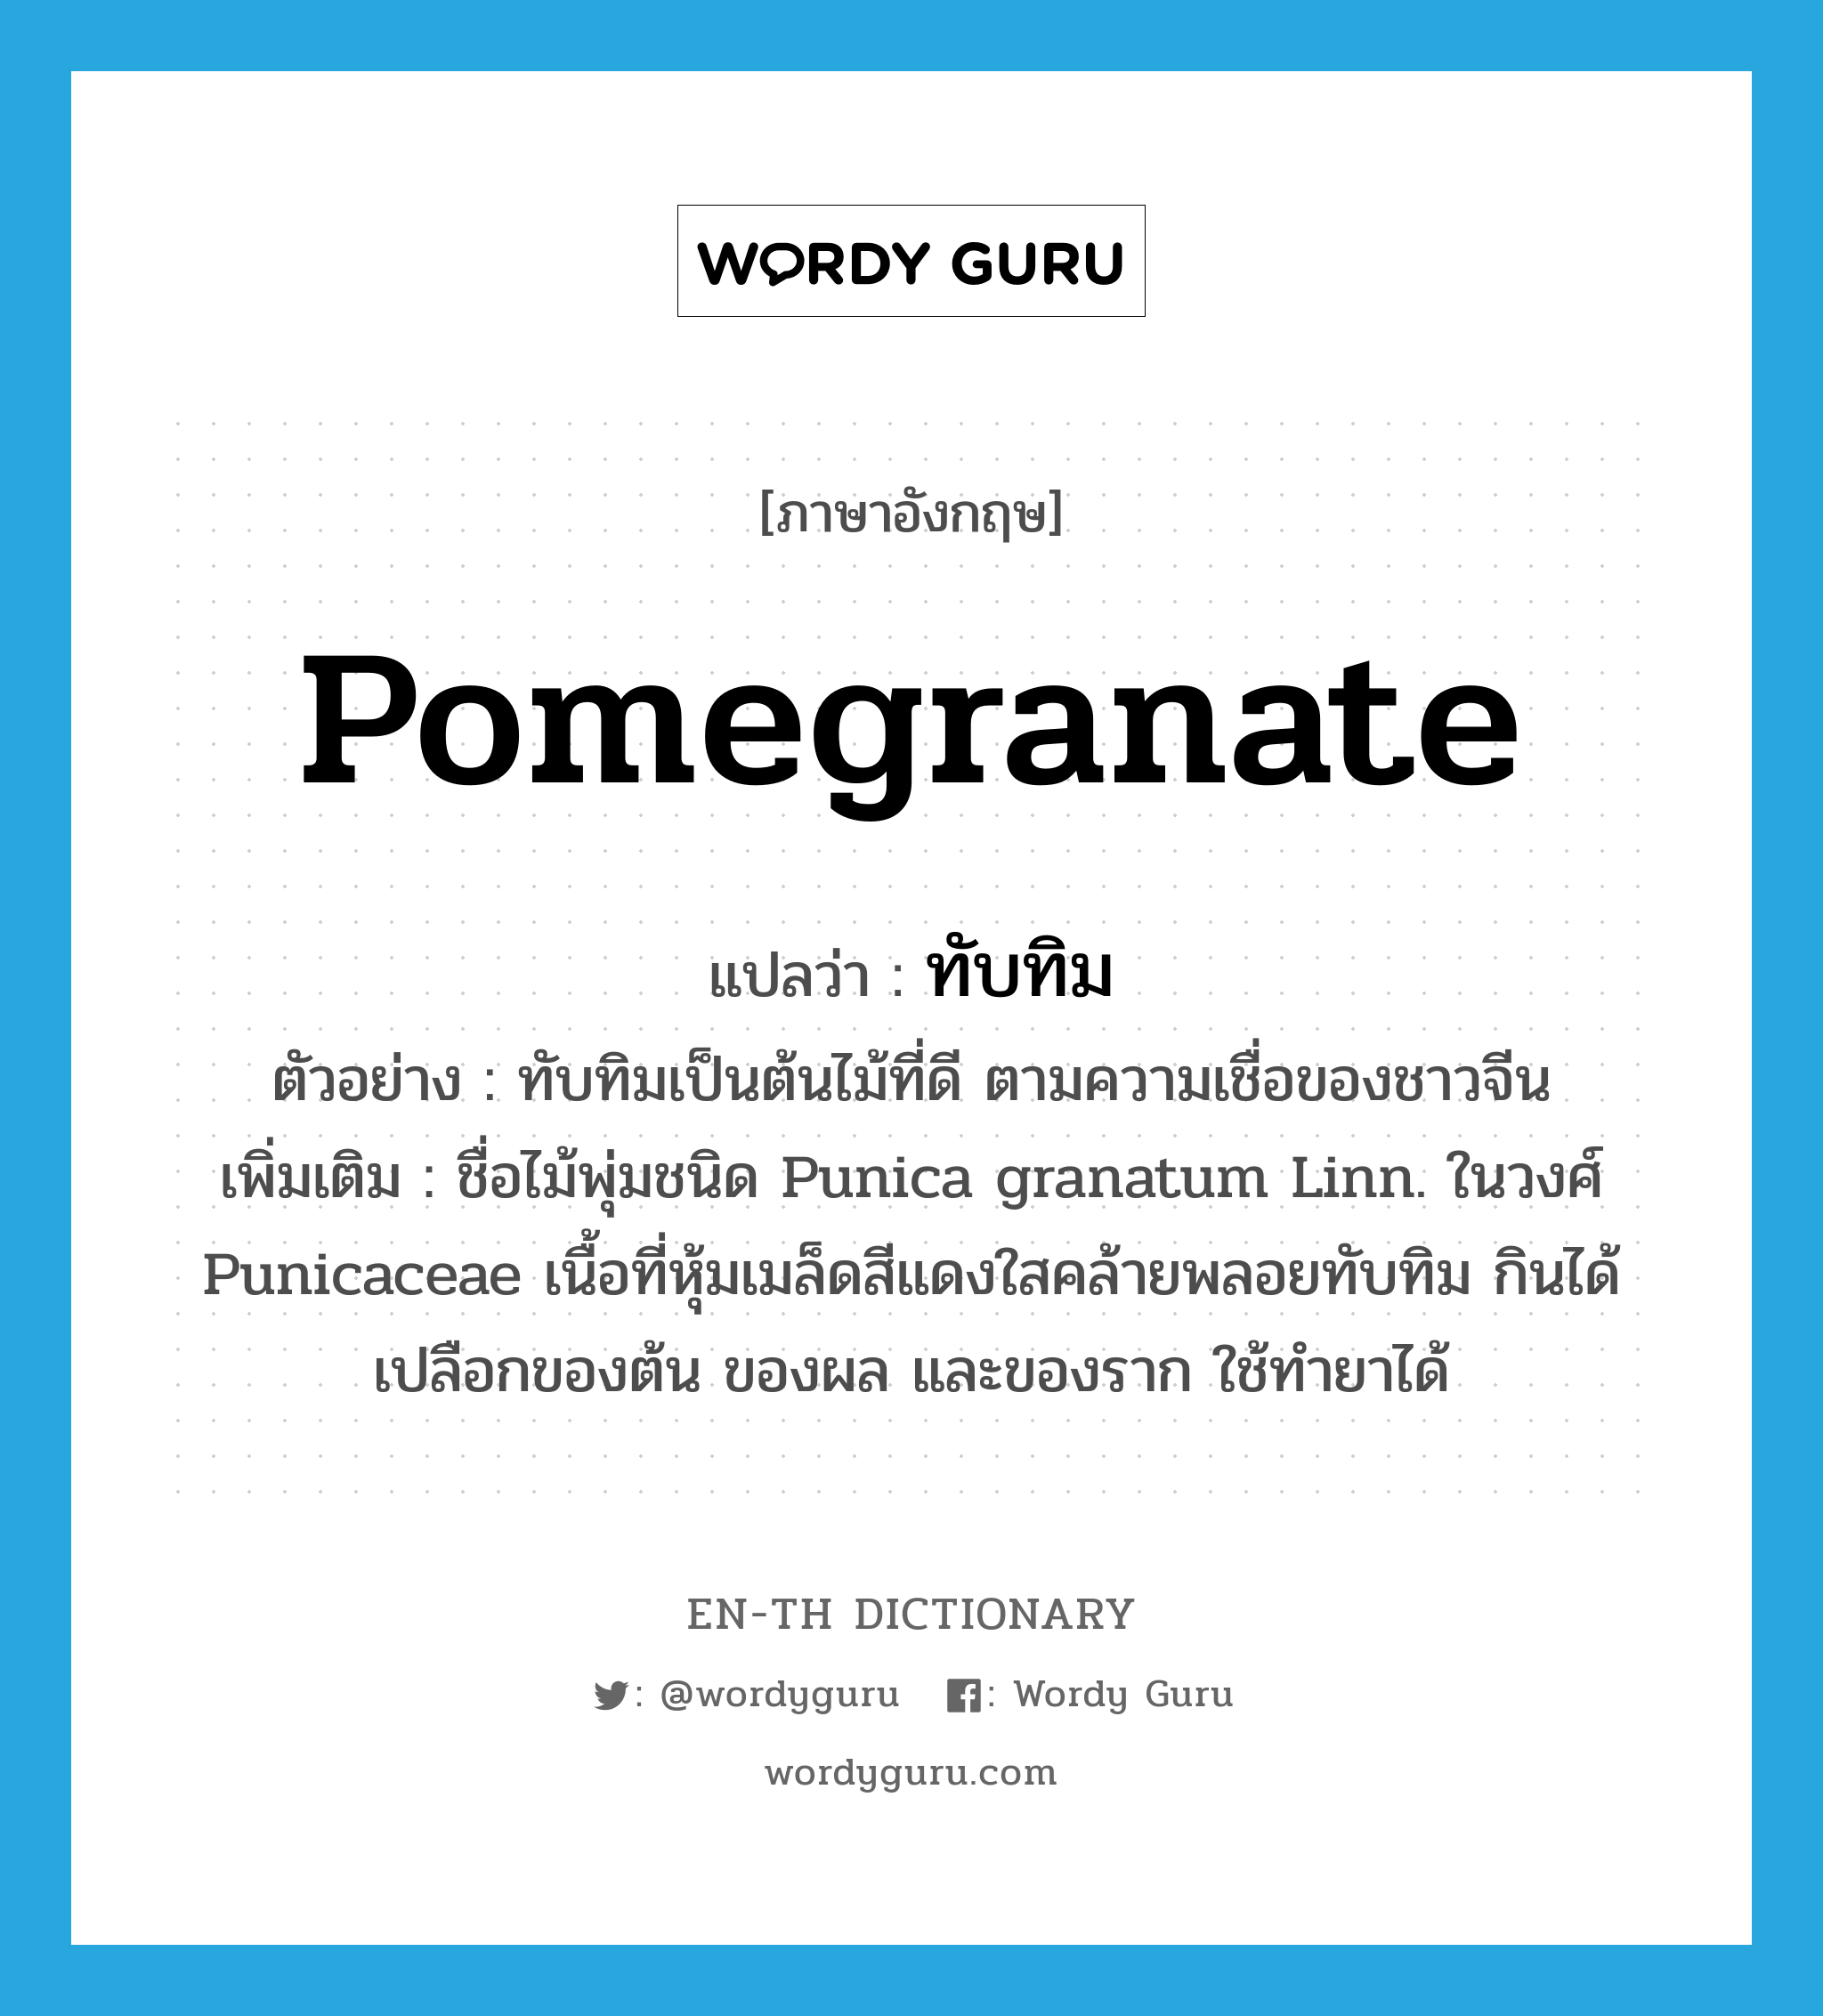 pomegranate แปลว่า?, คำศัพท์ภาษาอังกฤษ pomegranate แปลว่า ทับทิม ประเภท N ตัวอย่าง ทับทิมเป็นต้นไม้ที่ดี ตามความเชื่อของชาวจีน เพิ่มเติม ชื่อไม้พุ่มชนิด Punica granatum Linn. ในวงศ์ Punicaceae เนื้อที่หุ้มเมล็ดสีแดงใสคล้ายพลอยทับทิม กินได้ เปลือกของต้น ของผล และของราก ใช้ทำยาได้ หมวด N